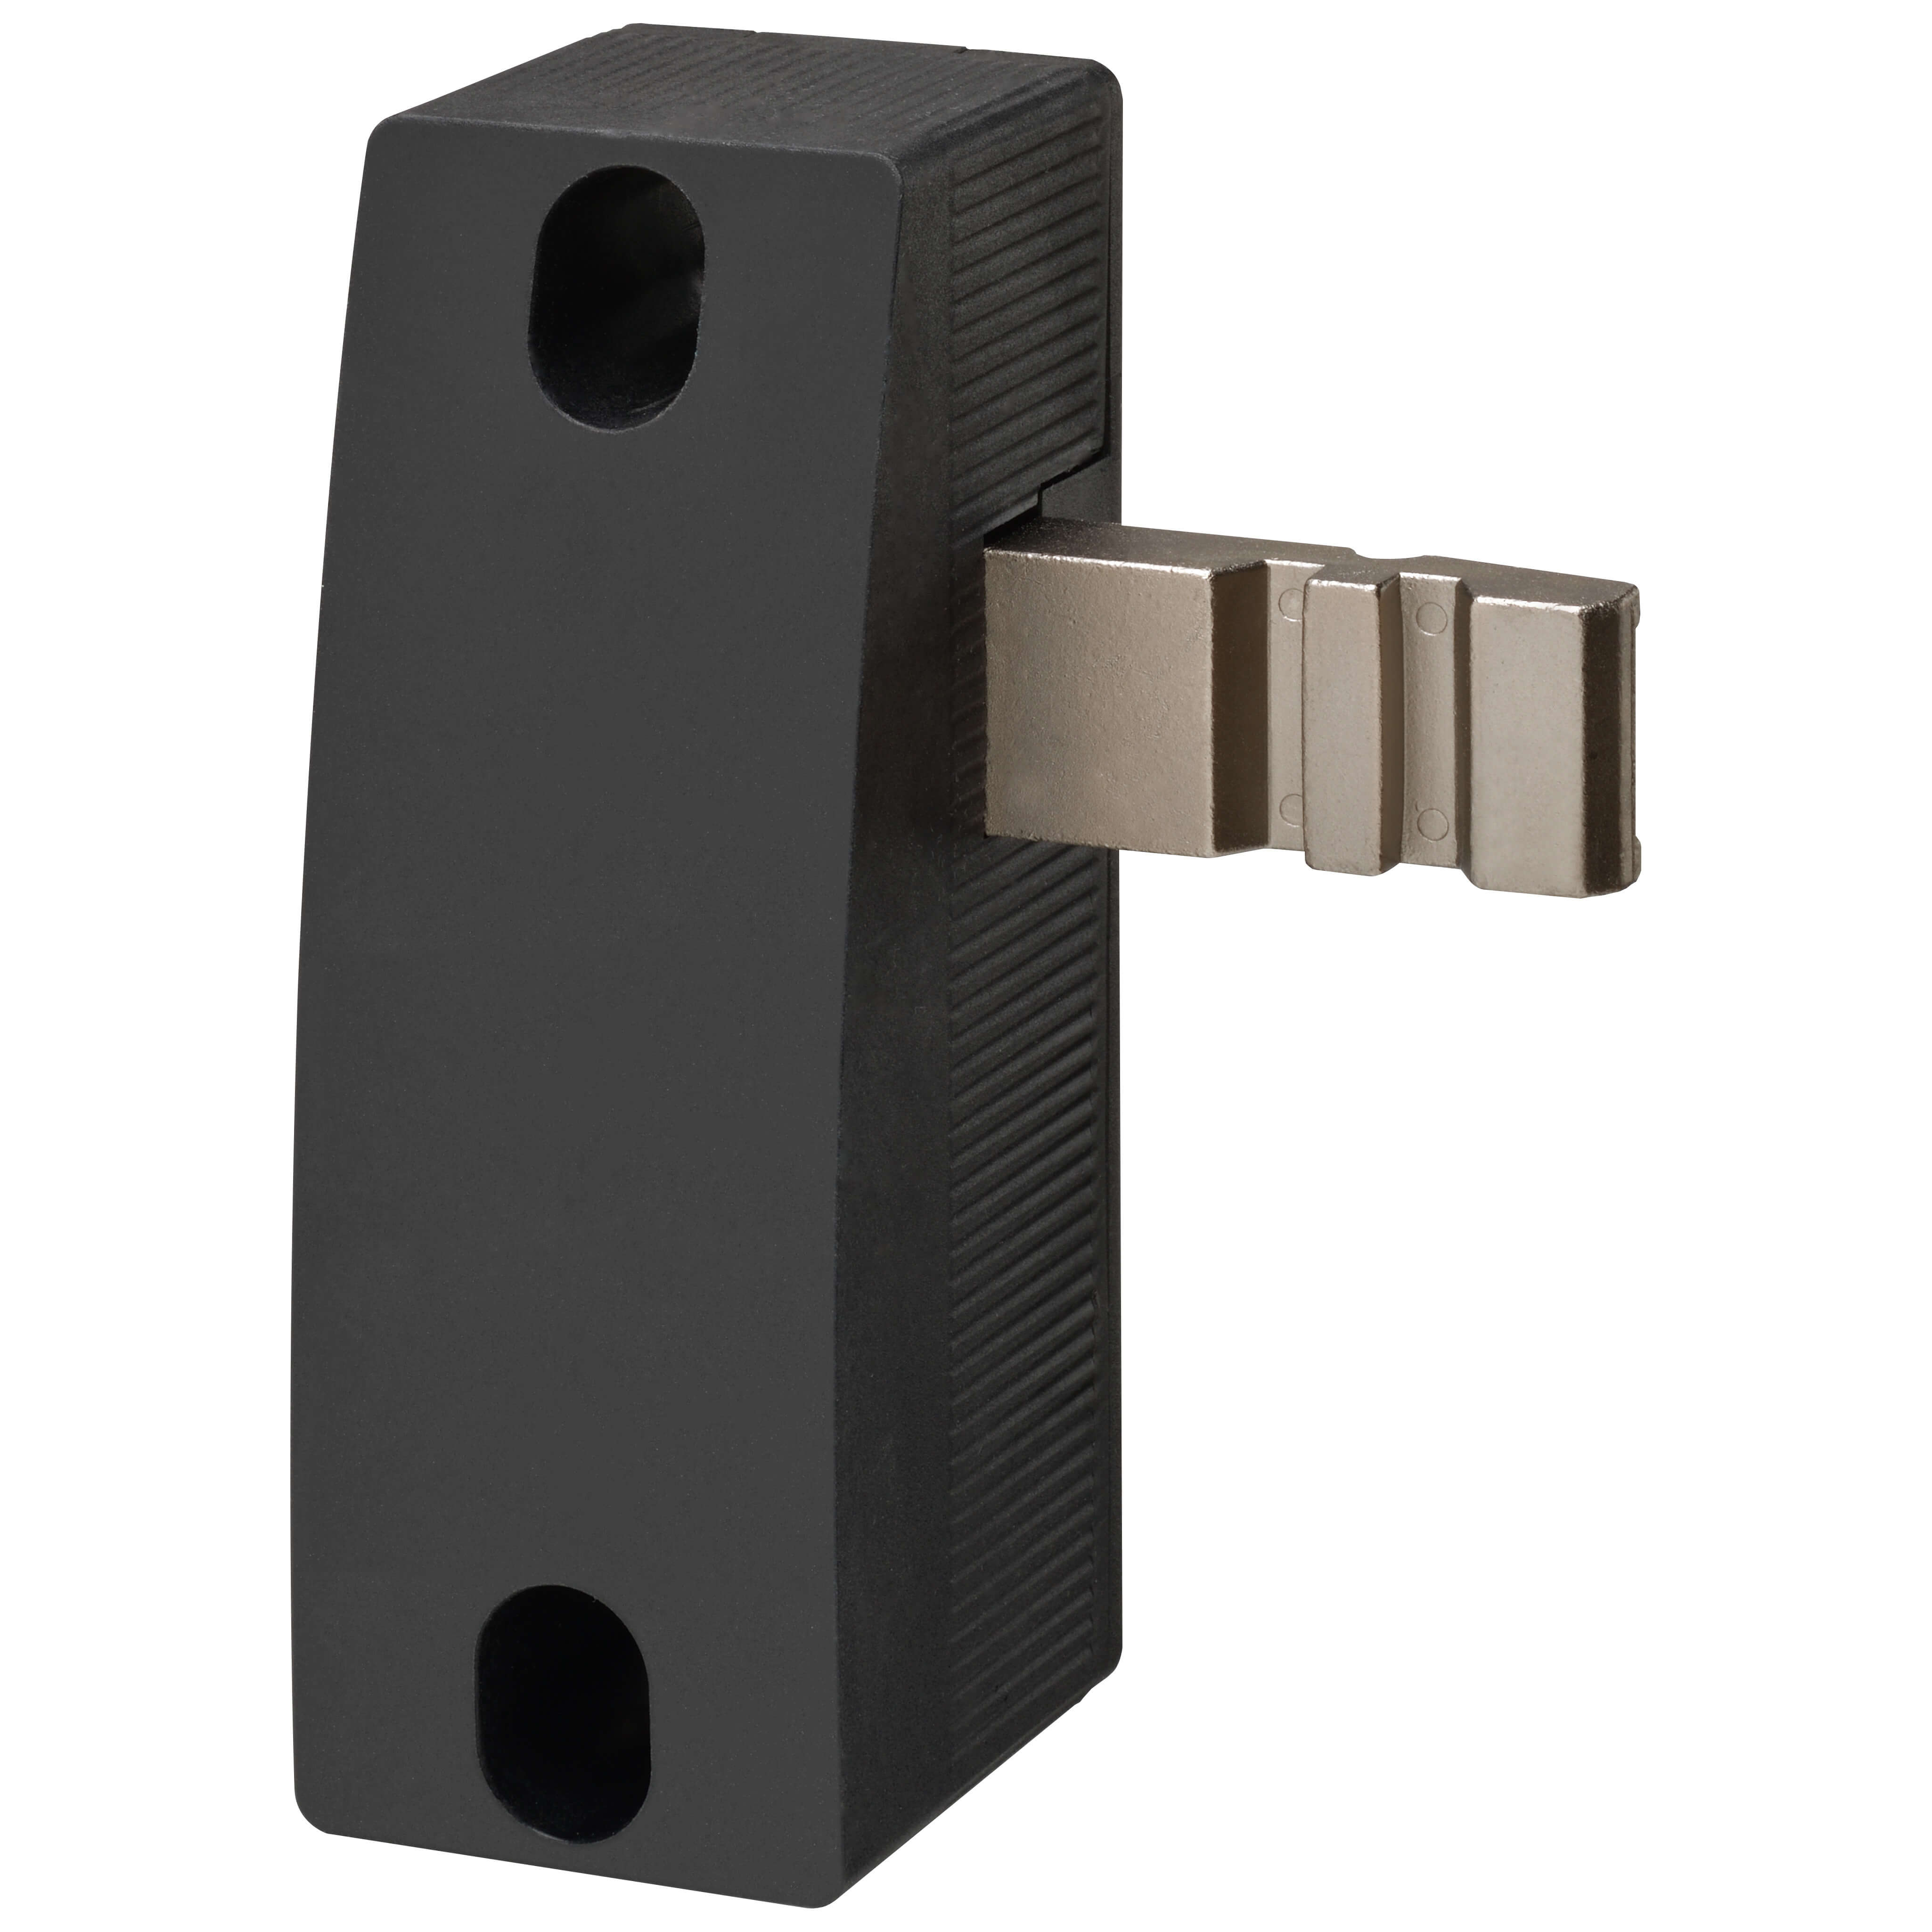 Actionneurs pour interrupteurs de portes verrouillables de protection à code élevé D41G D41G-A2R-E1